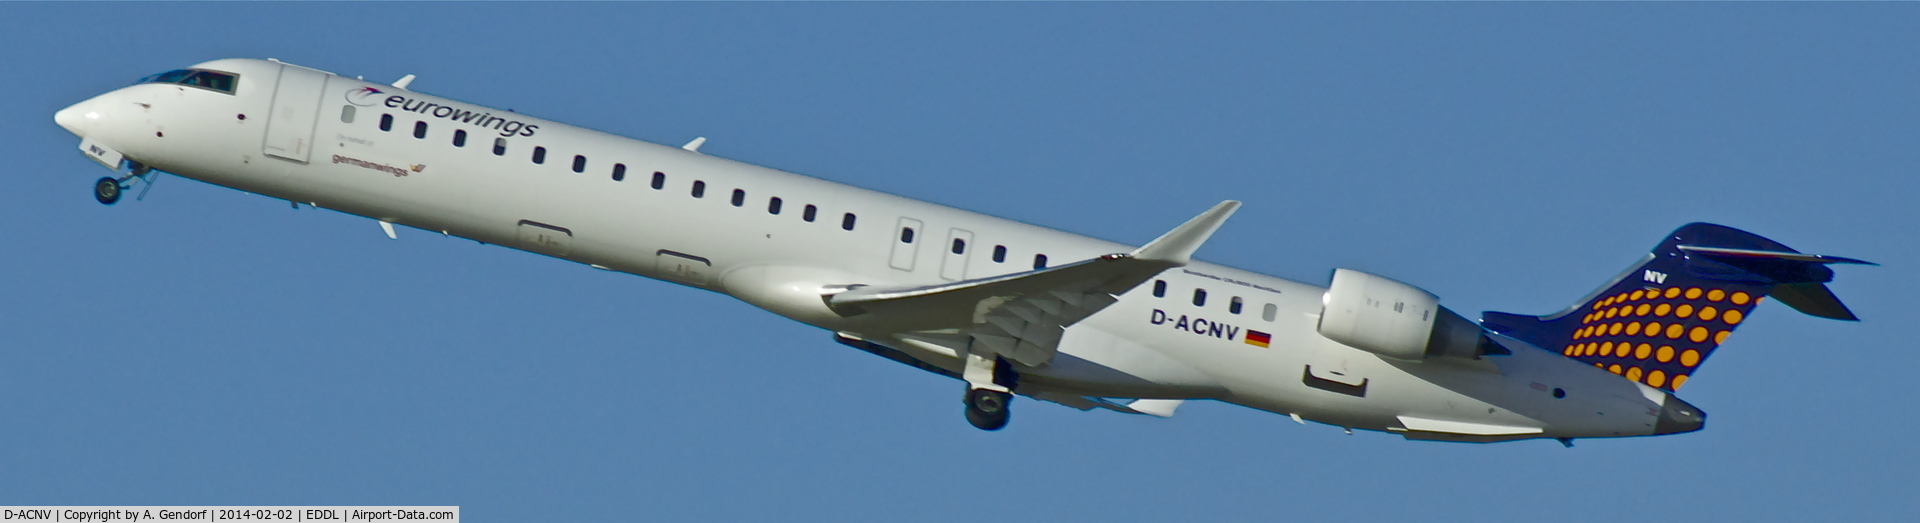 D-ACNV, 2011 Bombardier CRJ-900LR (CL-600-2D24) C/N 15268, Eurowings (